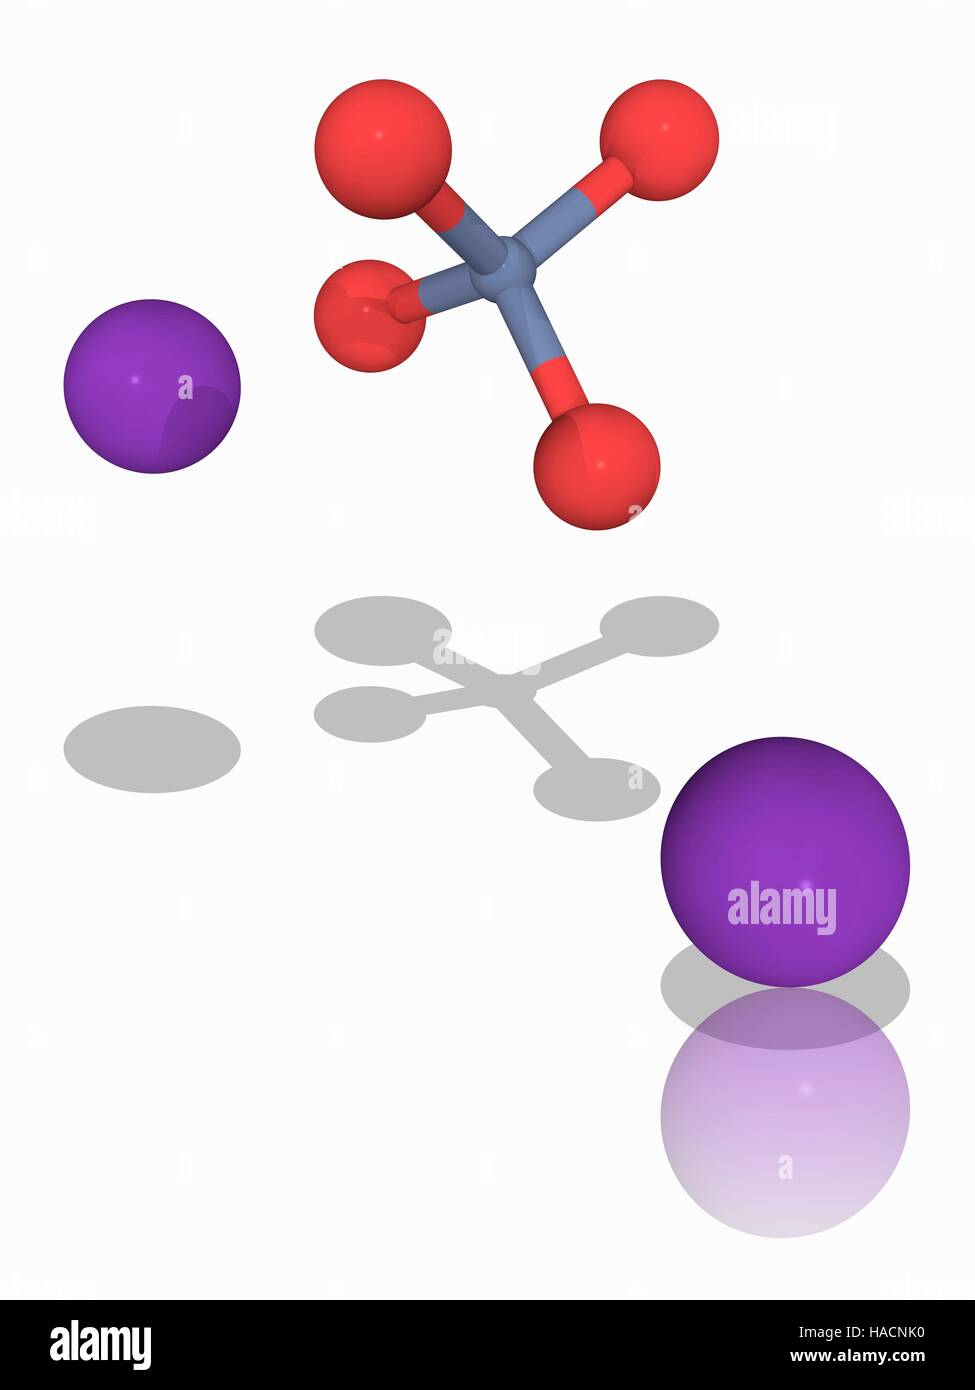 El cromato de potasio. Modelo molecular del compuesto químico el cromato de potasio (K2.Cr.O4). Este compuesto iónica produce un color amarillo y se utiliza como un indicador para determinar las concentraciones de los iones cloruro disueltos en una solución con nitrato de plata. Los átomos son representados como esferas y están codificados por color: cromo (gris), el oxígeno (en rojo) y potasio (violeta). Ilustración. Foto de stock